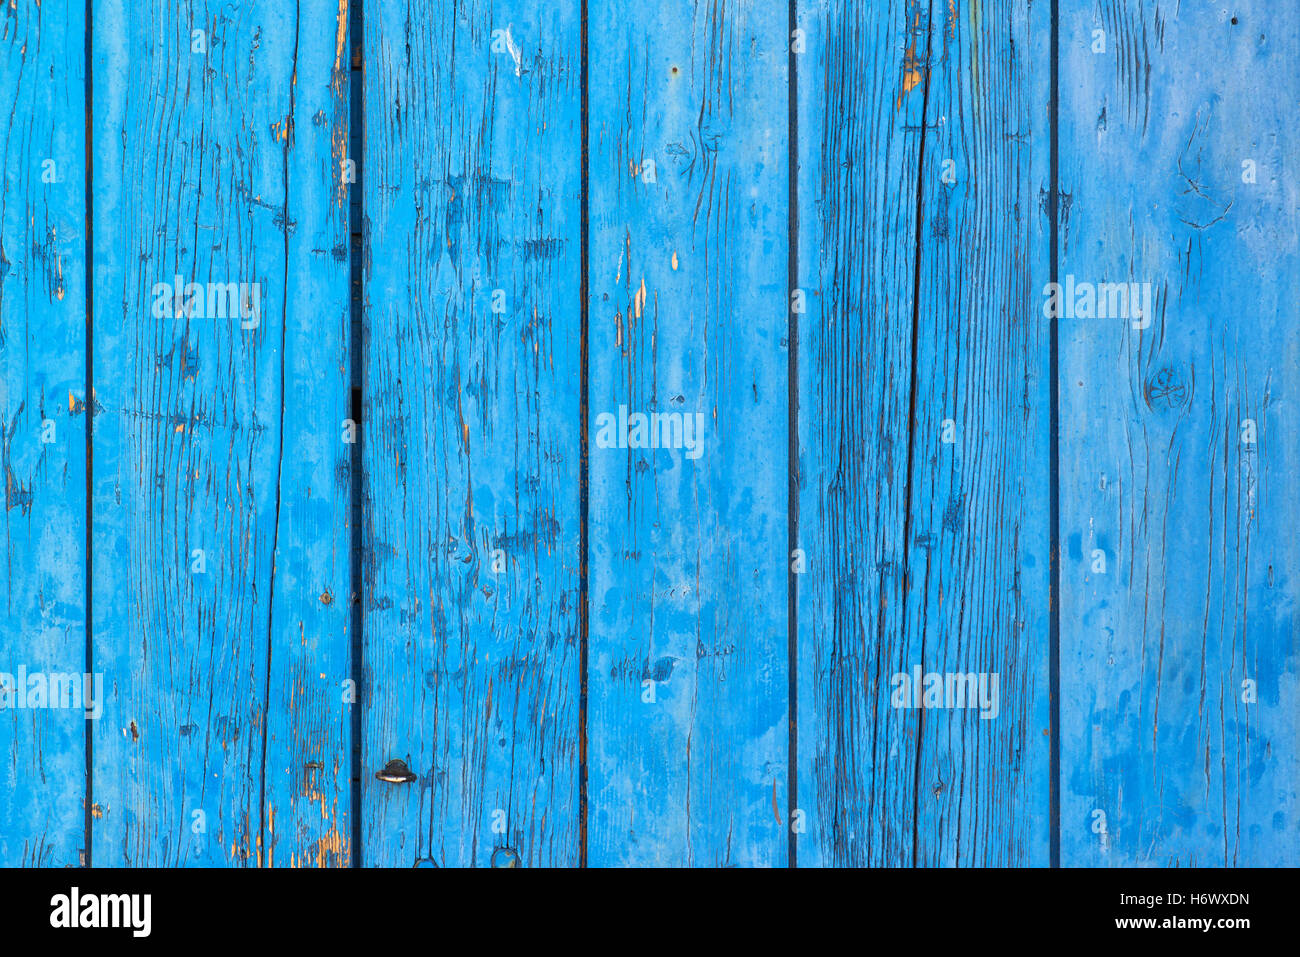 Bandes bleu rustique en bois ancien, surface avec décollement de peinture Banque D'Images